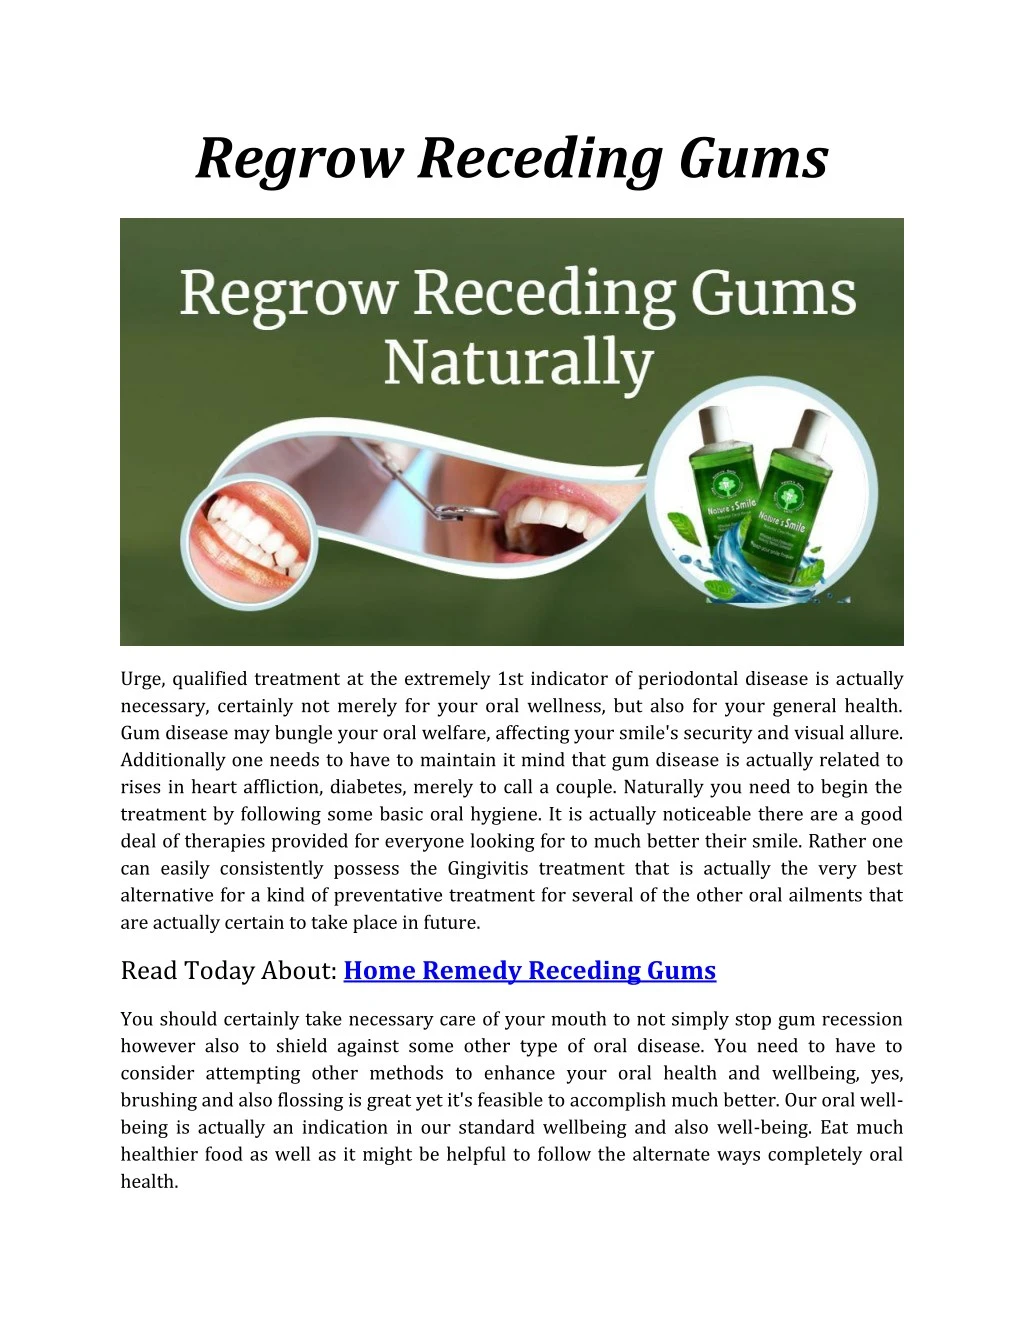 regrow receding gums